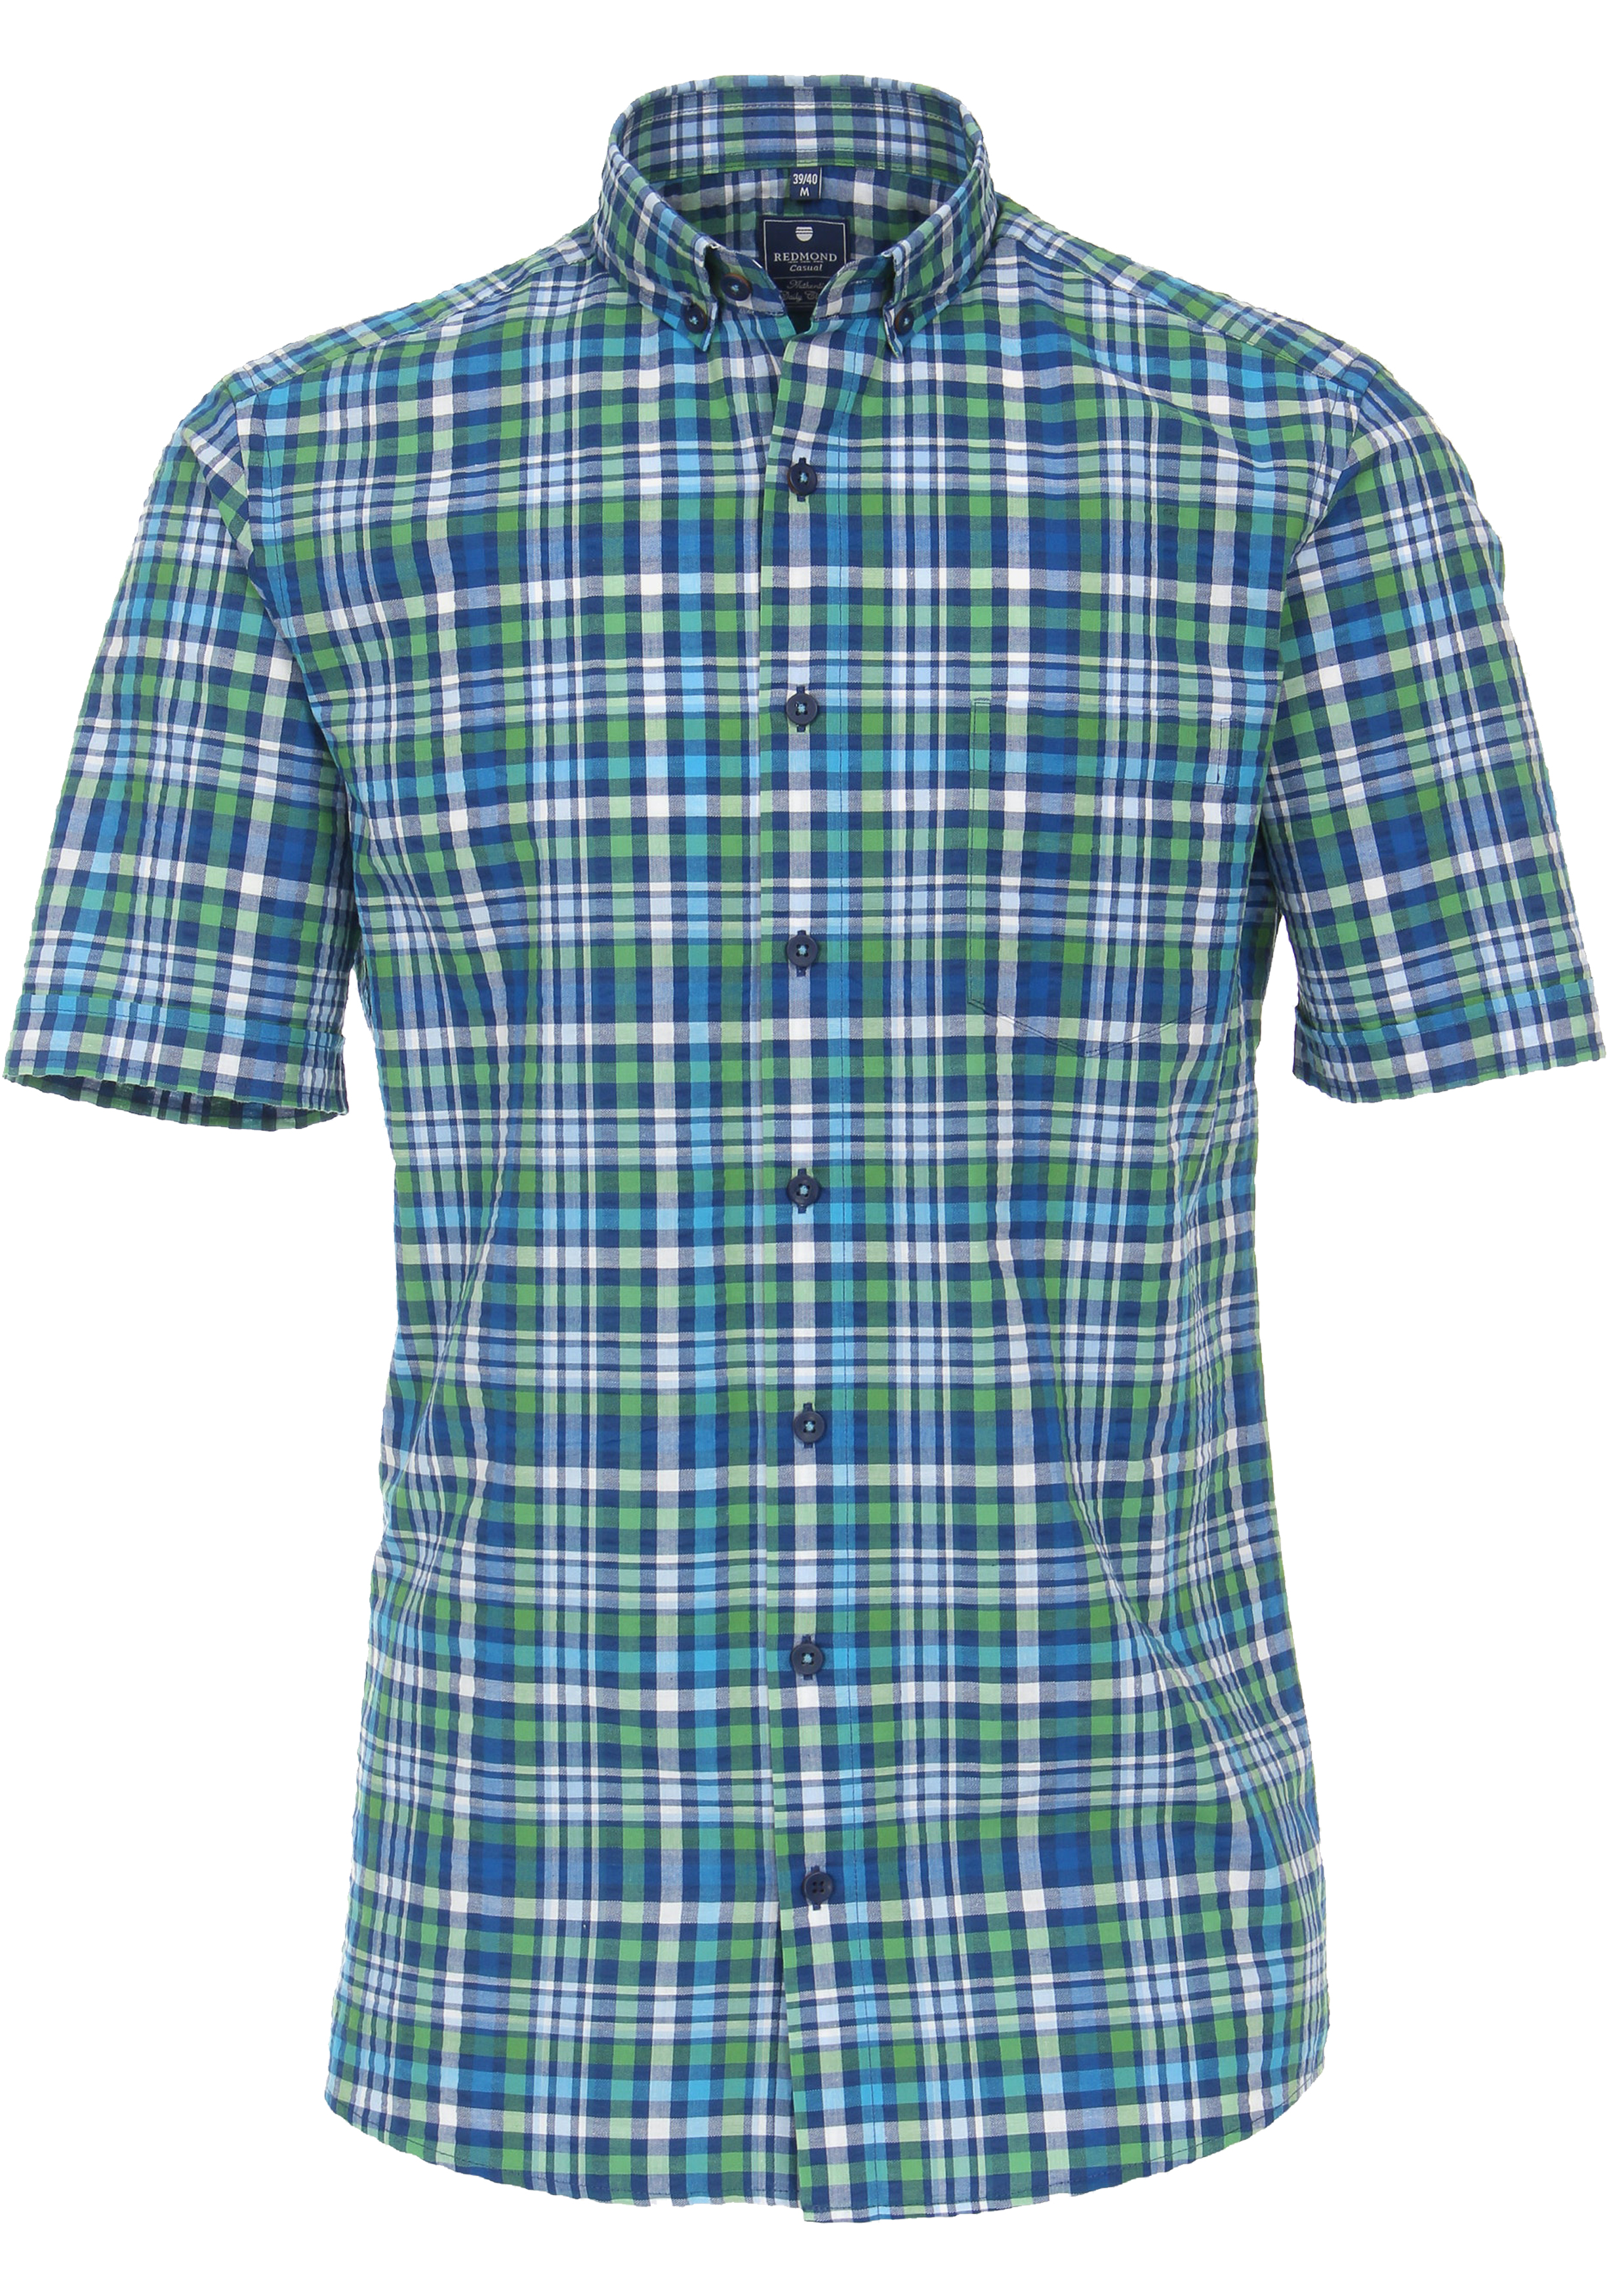 Redmond regular fit overhemd, korte mouw, , blauw geruit